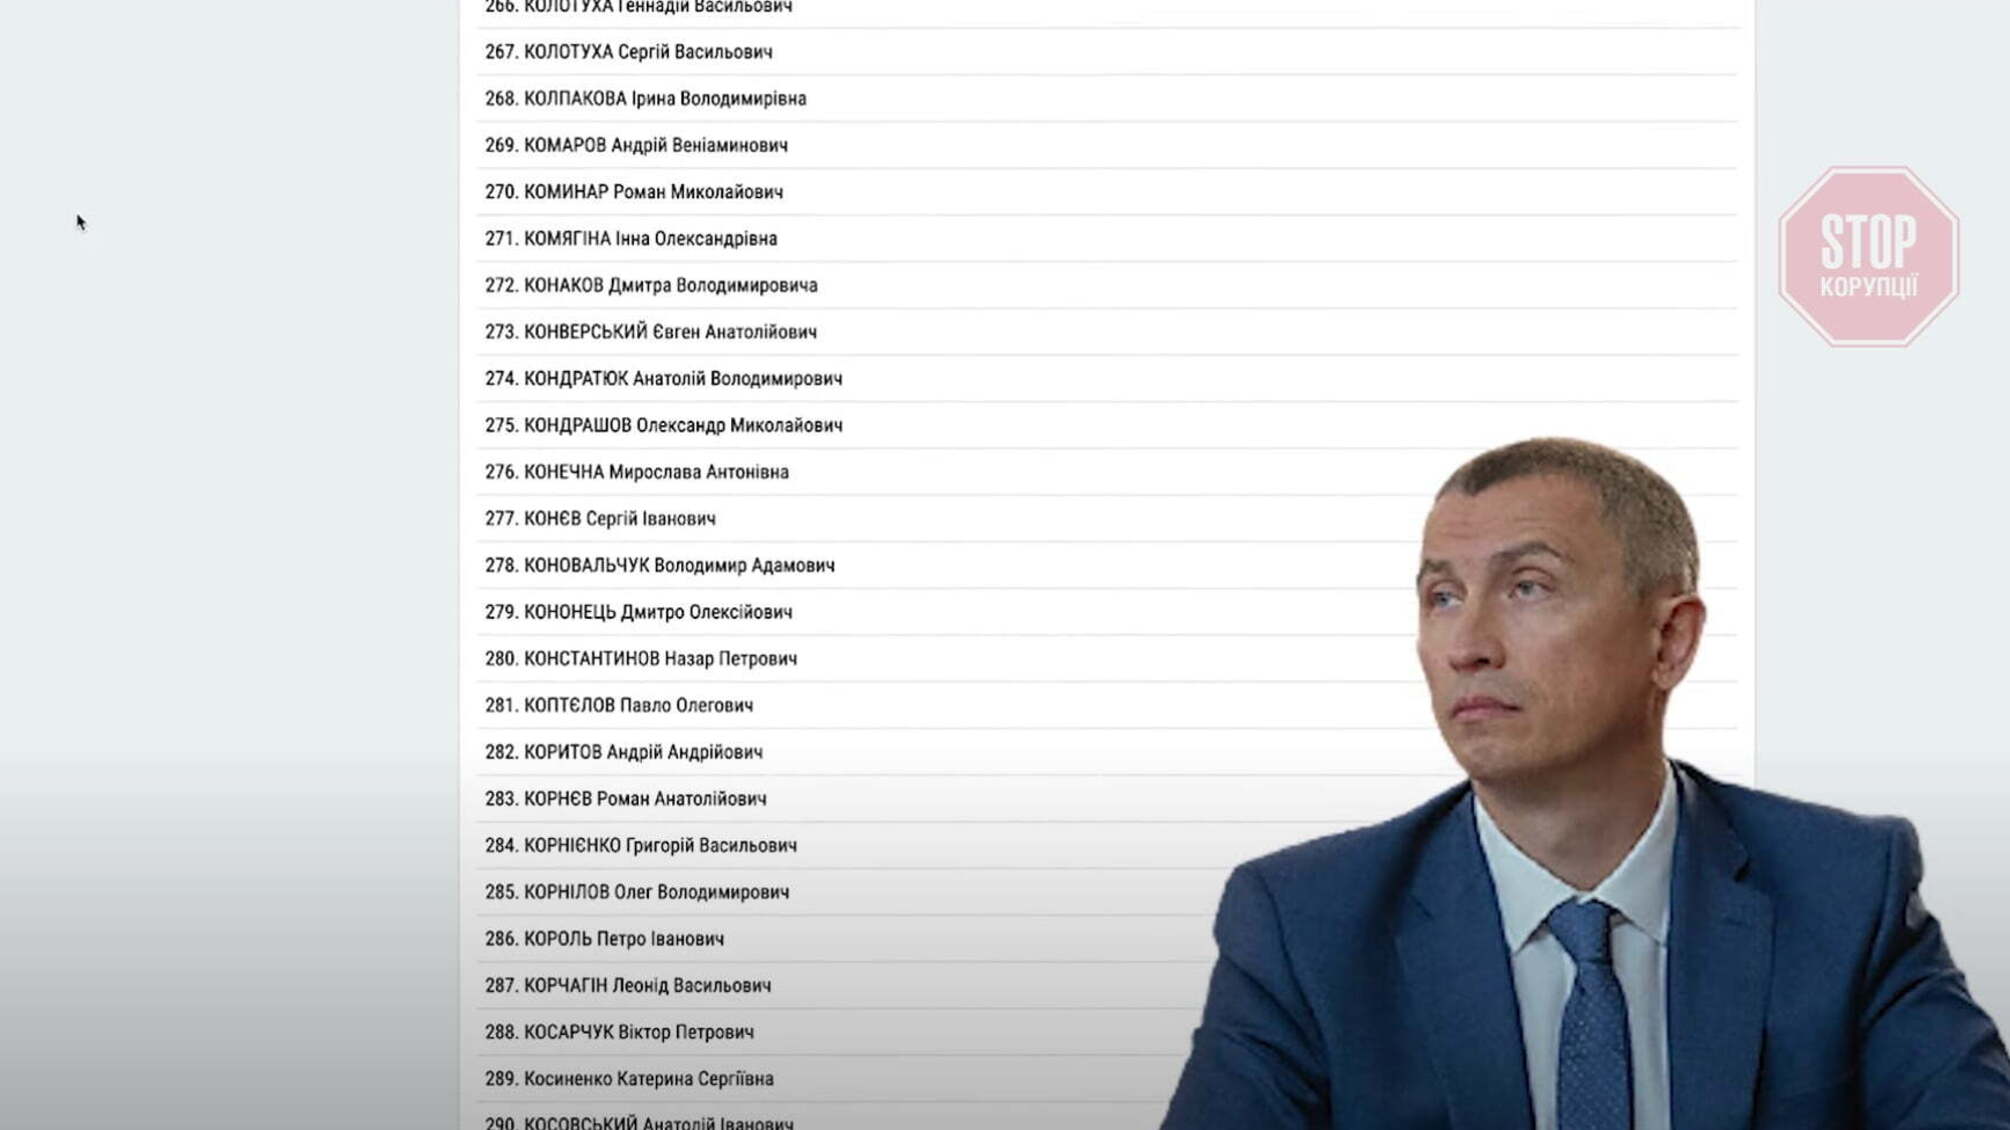 Вместо люстрации – декрет: одиозный чиновник времен Януковича Андес до сих пор работает в ГНС